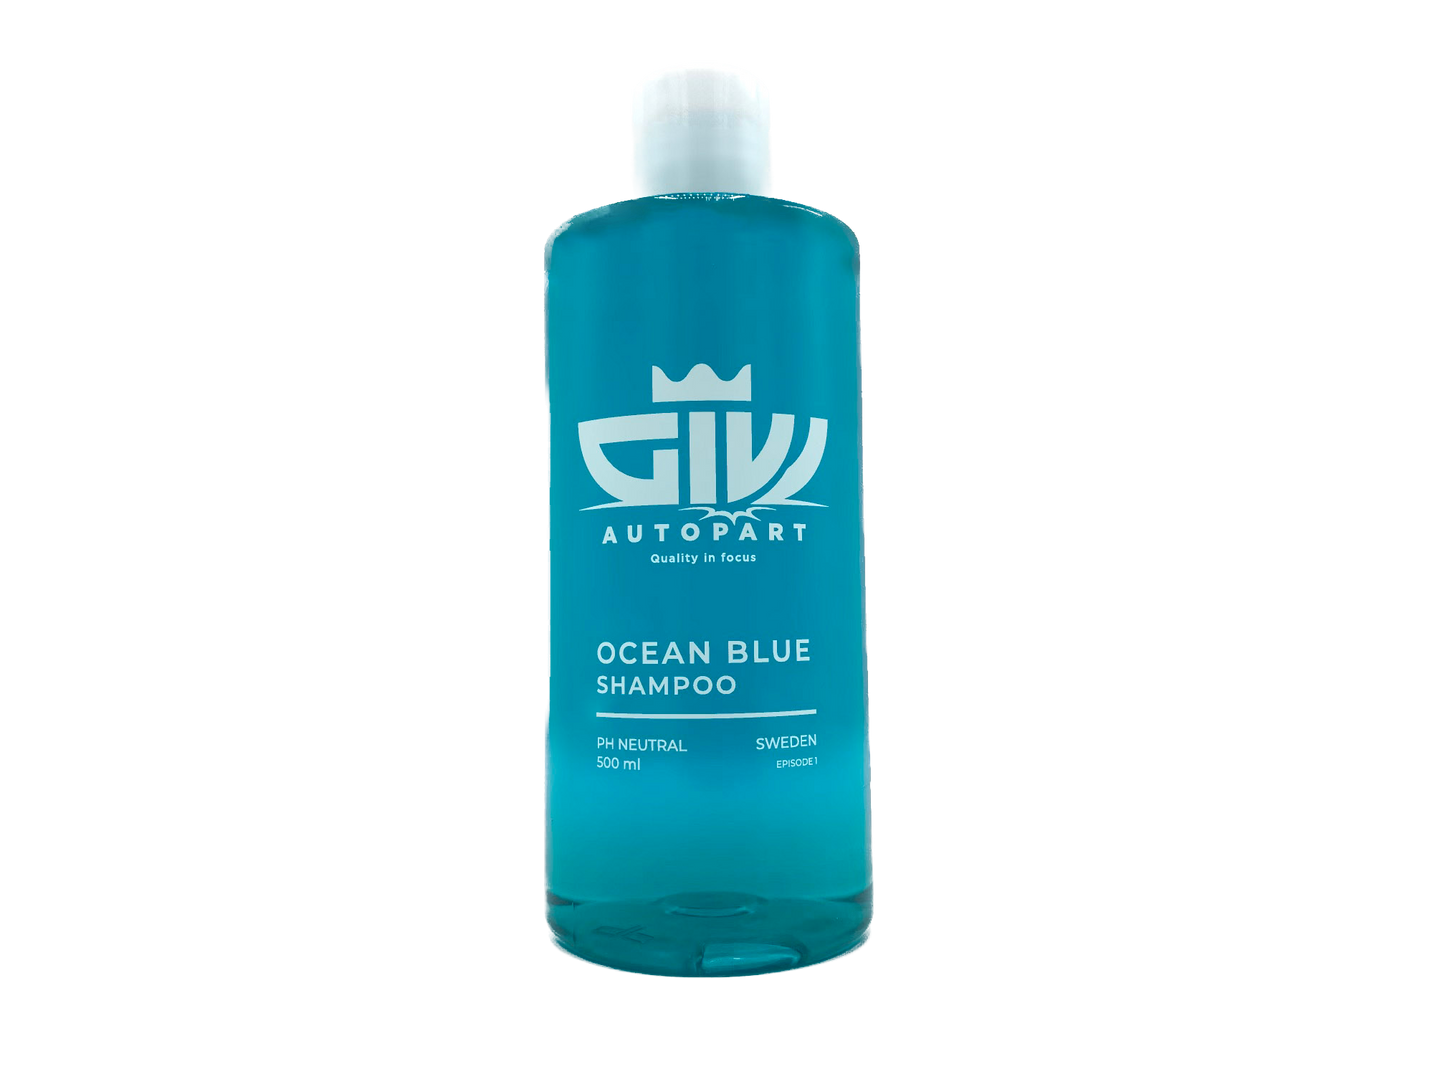 Ocean Blue Shampoo - PH Neutral 500 ml